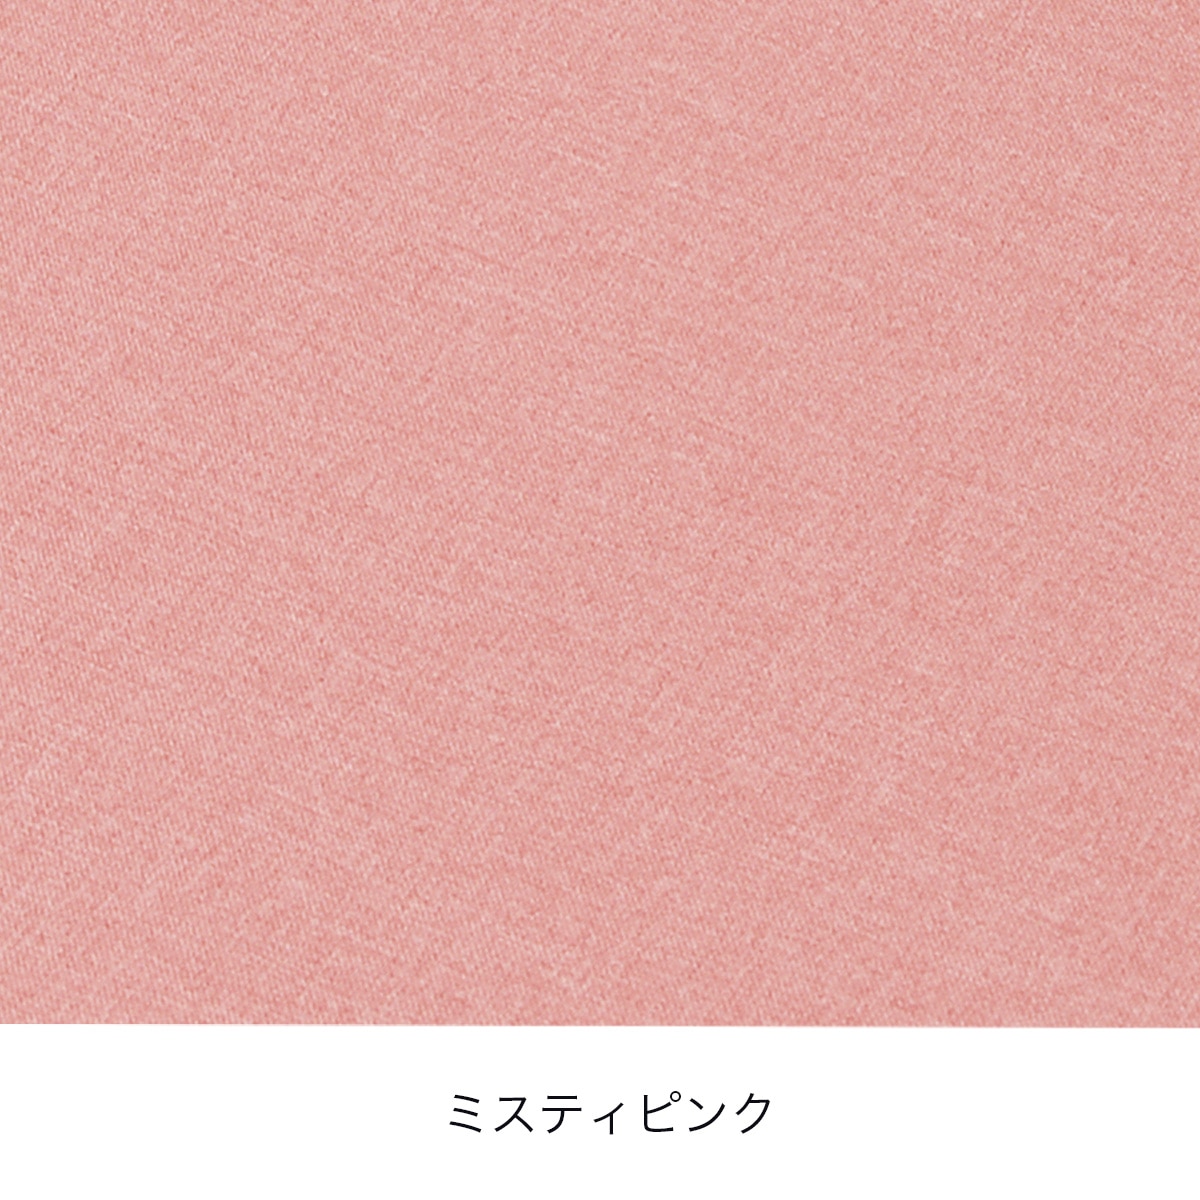  床プニフィット専用カバー(春夏用)